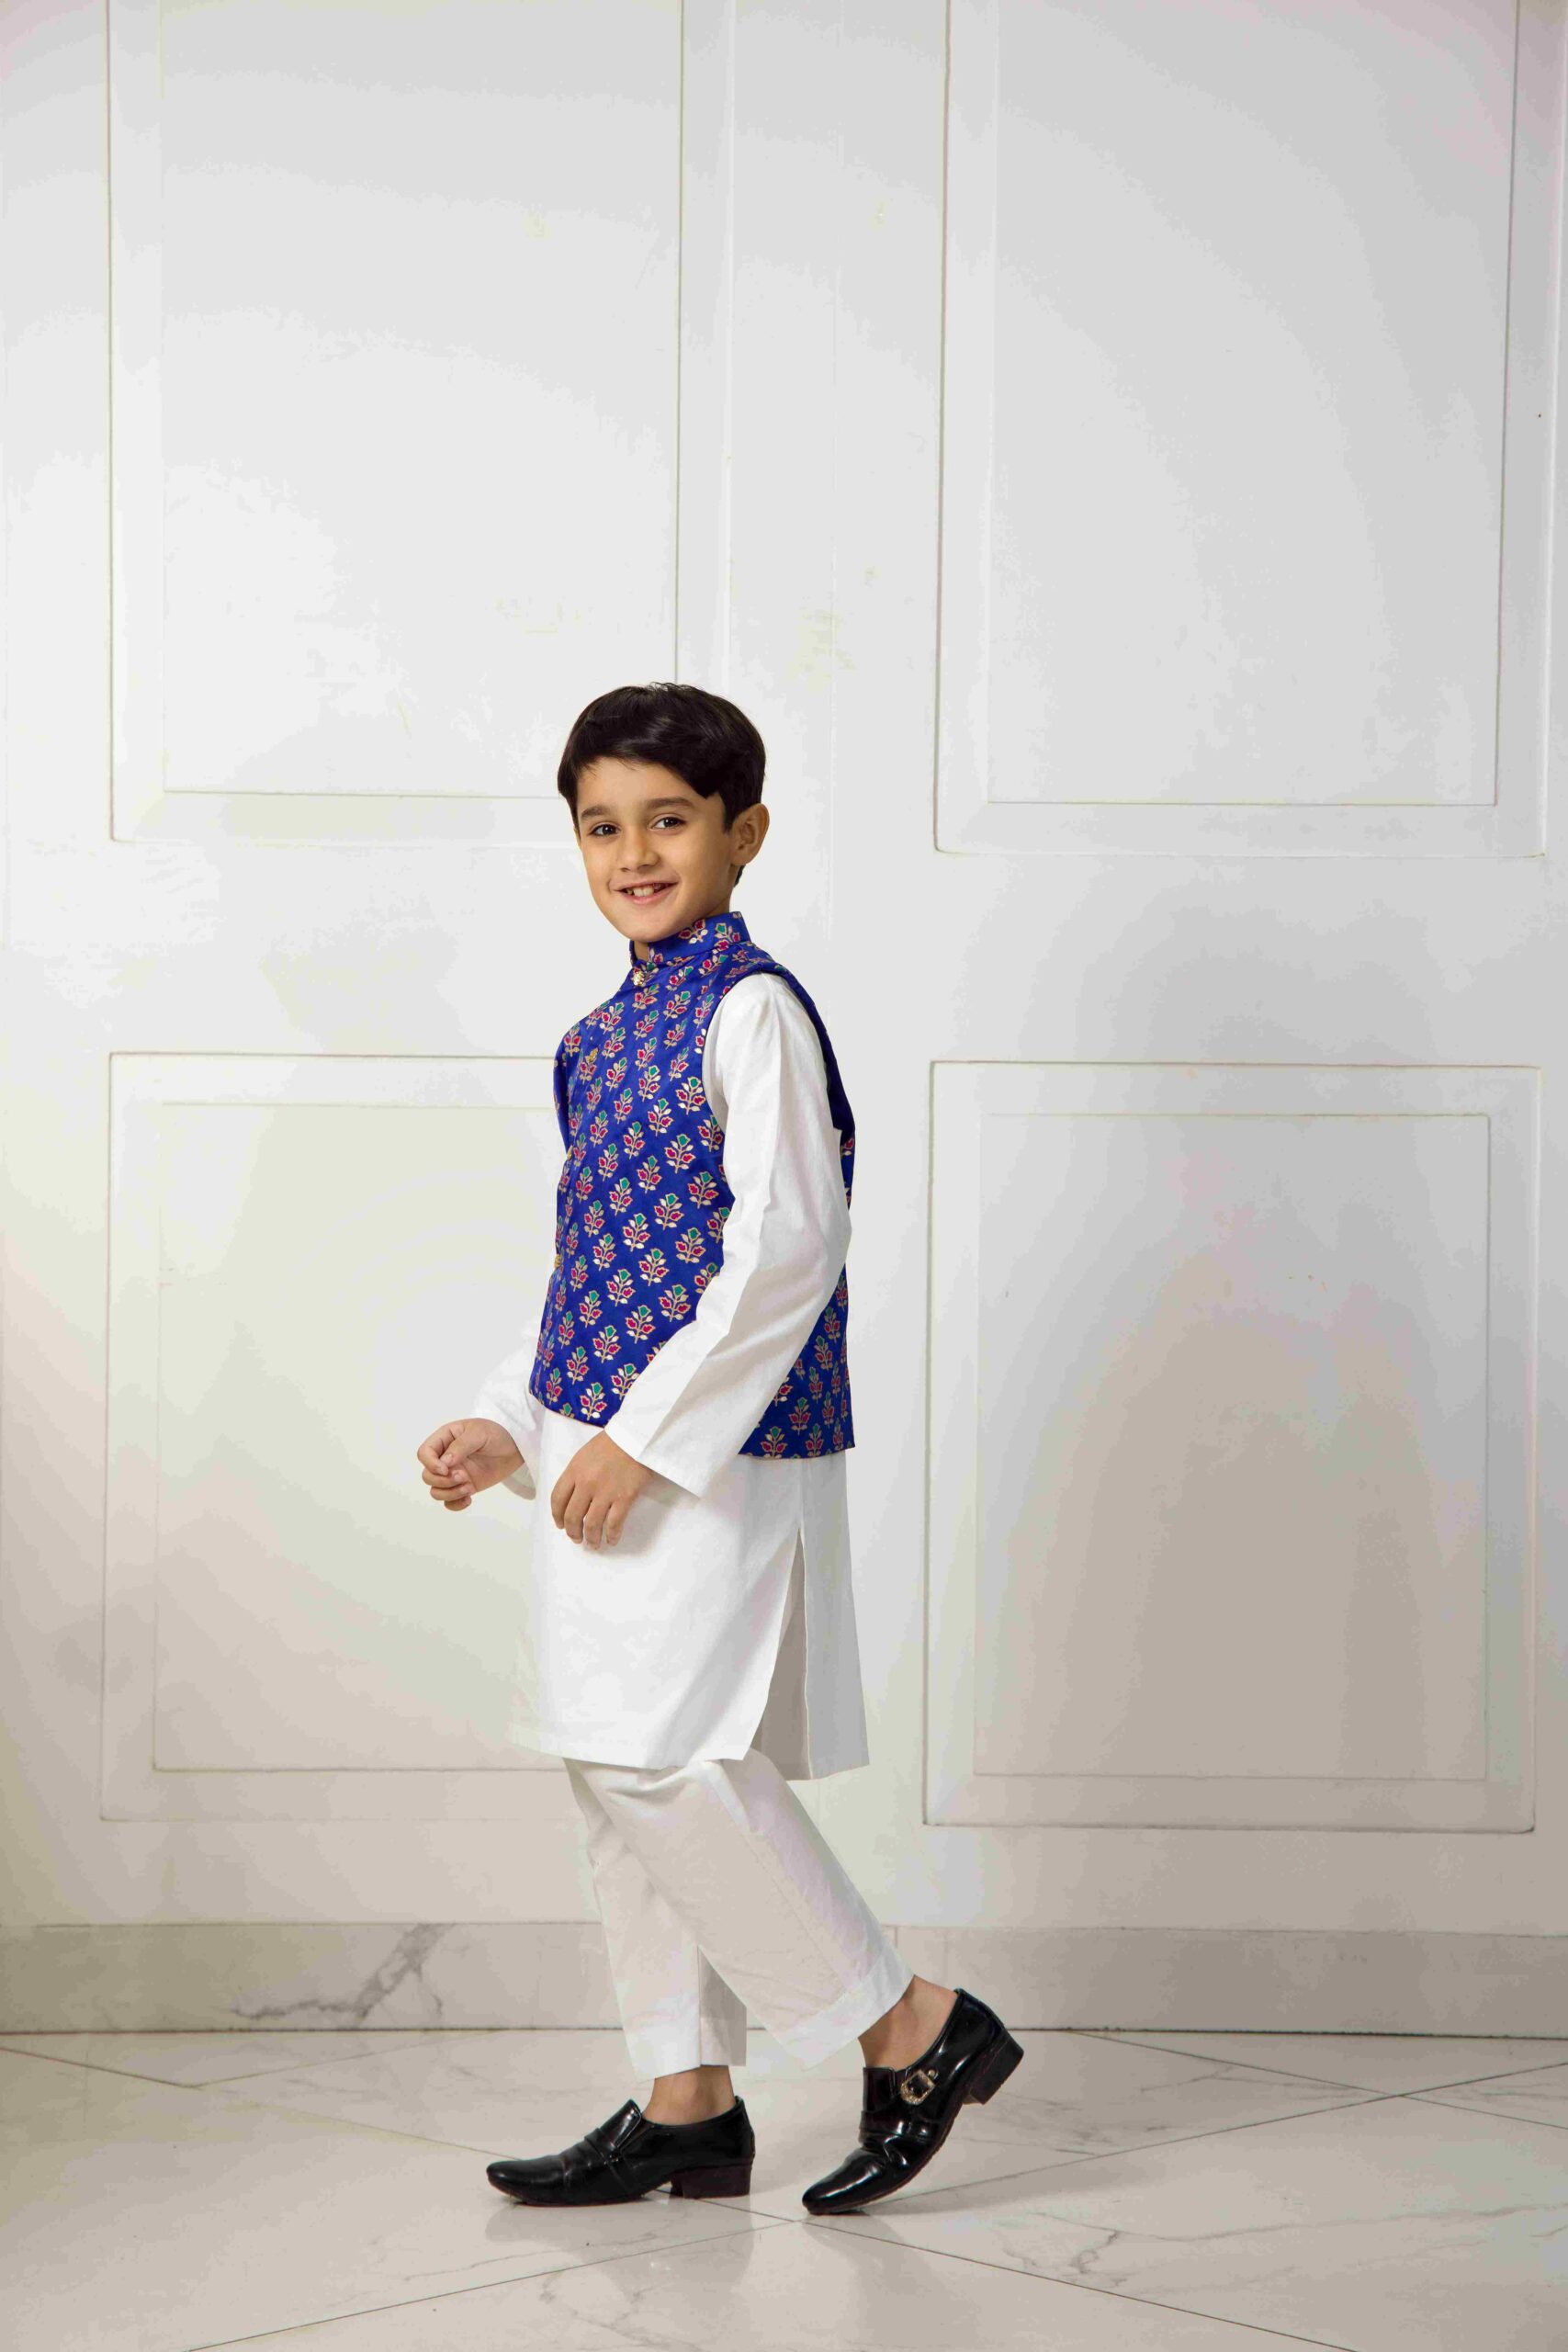 shop online for kidswear in Pakistan-shk-1053